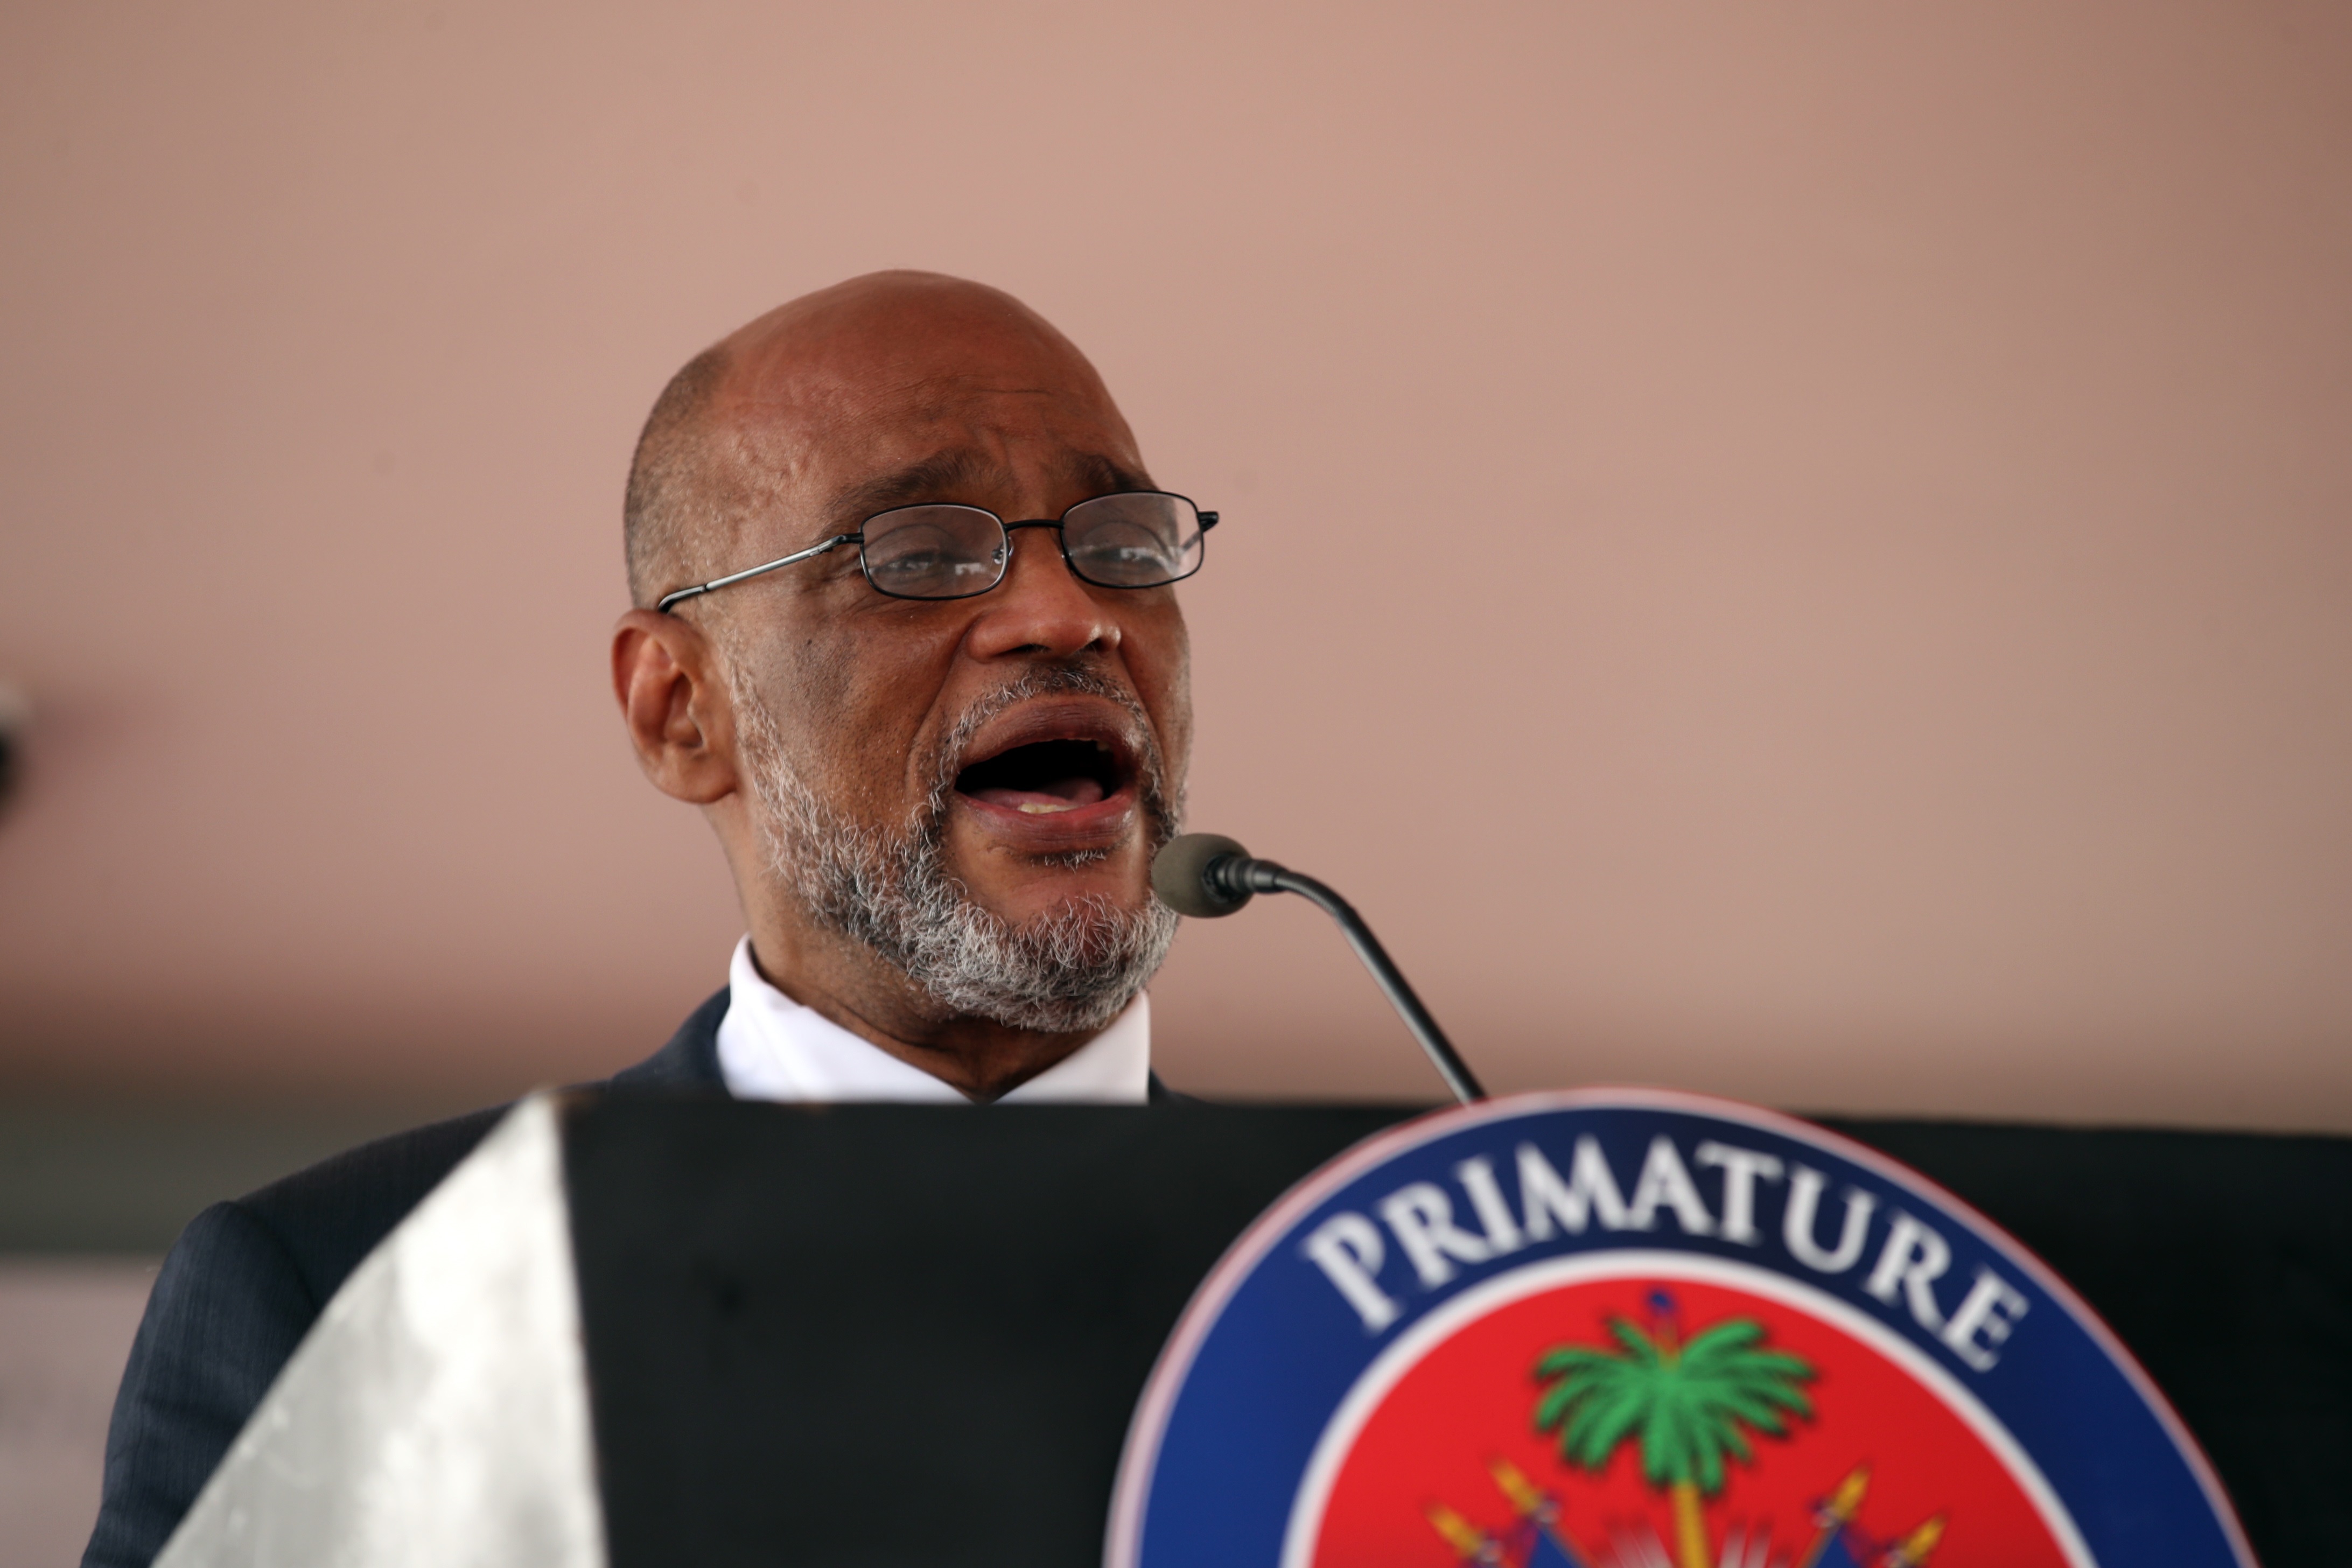 El nuevo primer ministro de Haití pidió castigo ejemplar para asesinos de Moïse